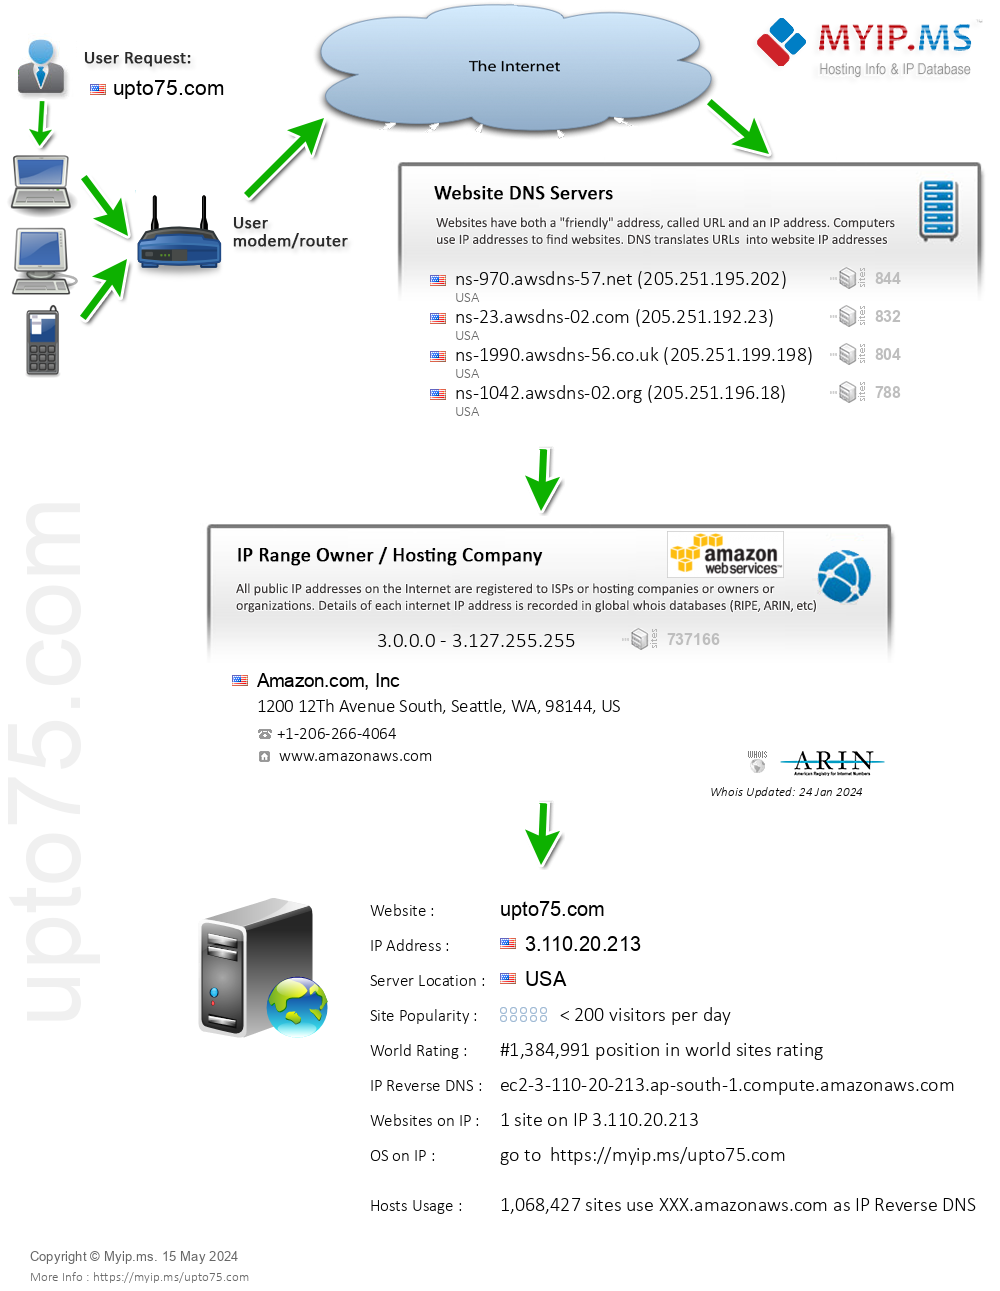 Upto75.com - Website Hosting Visual IP Diagram